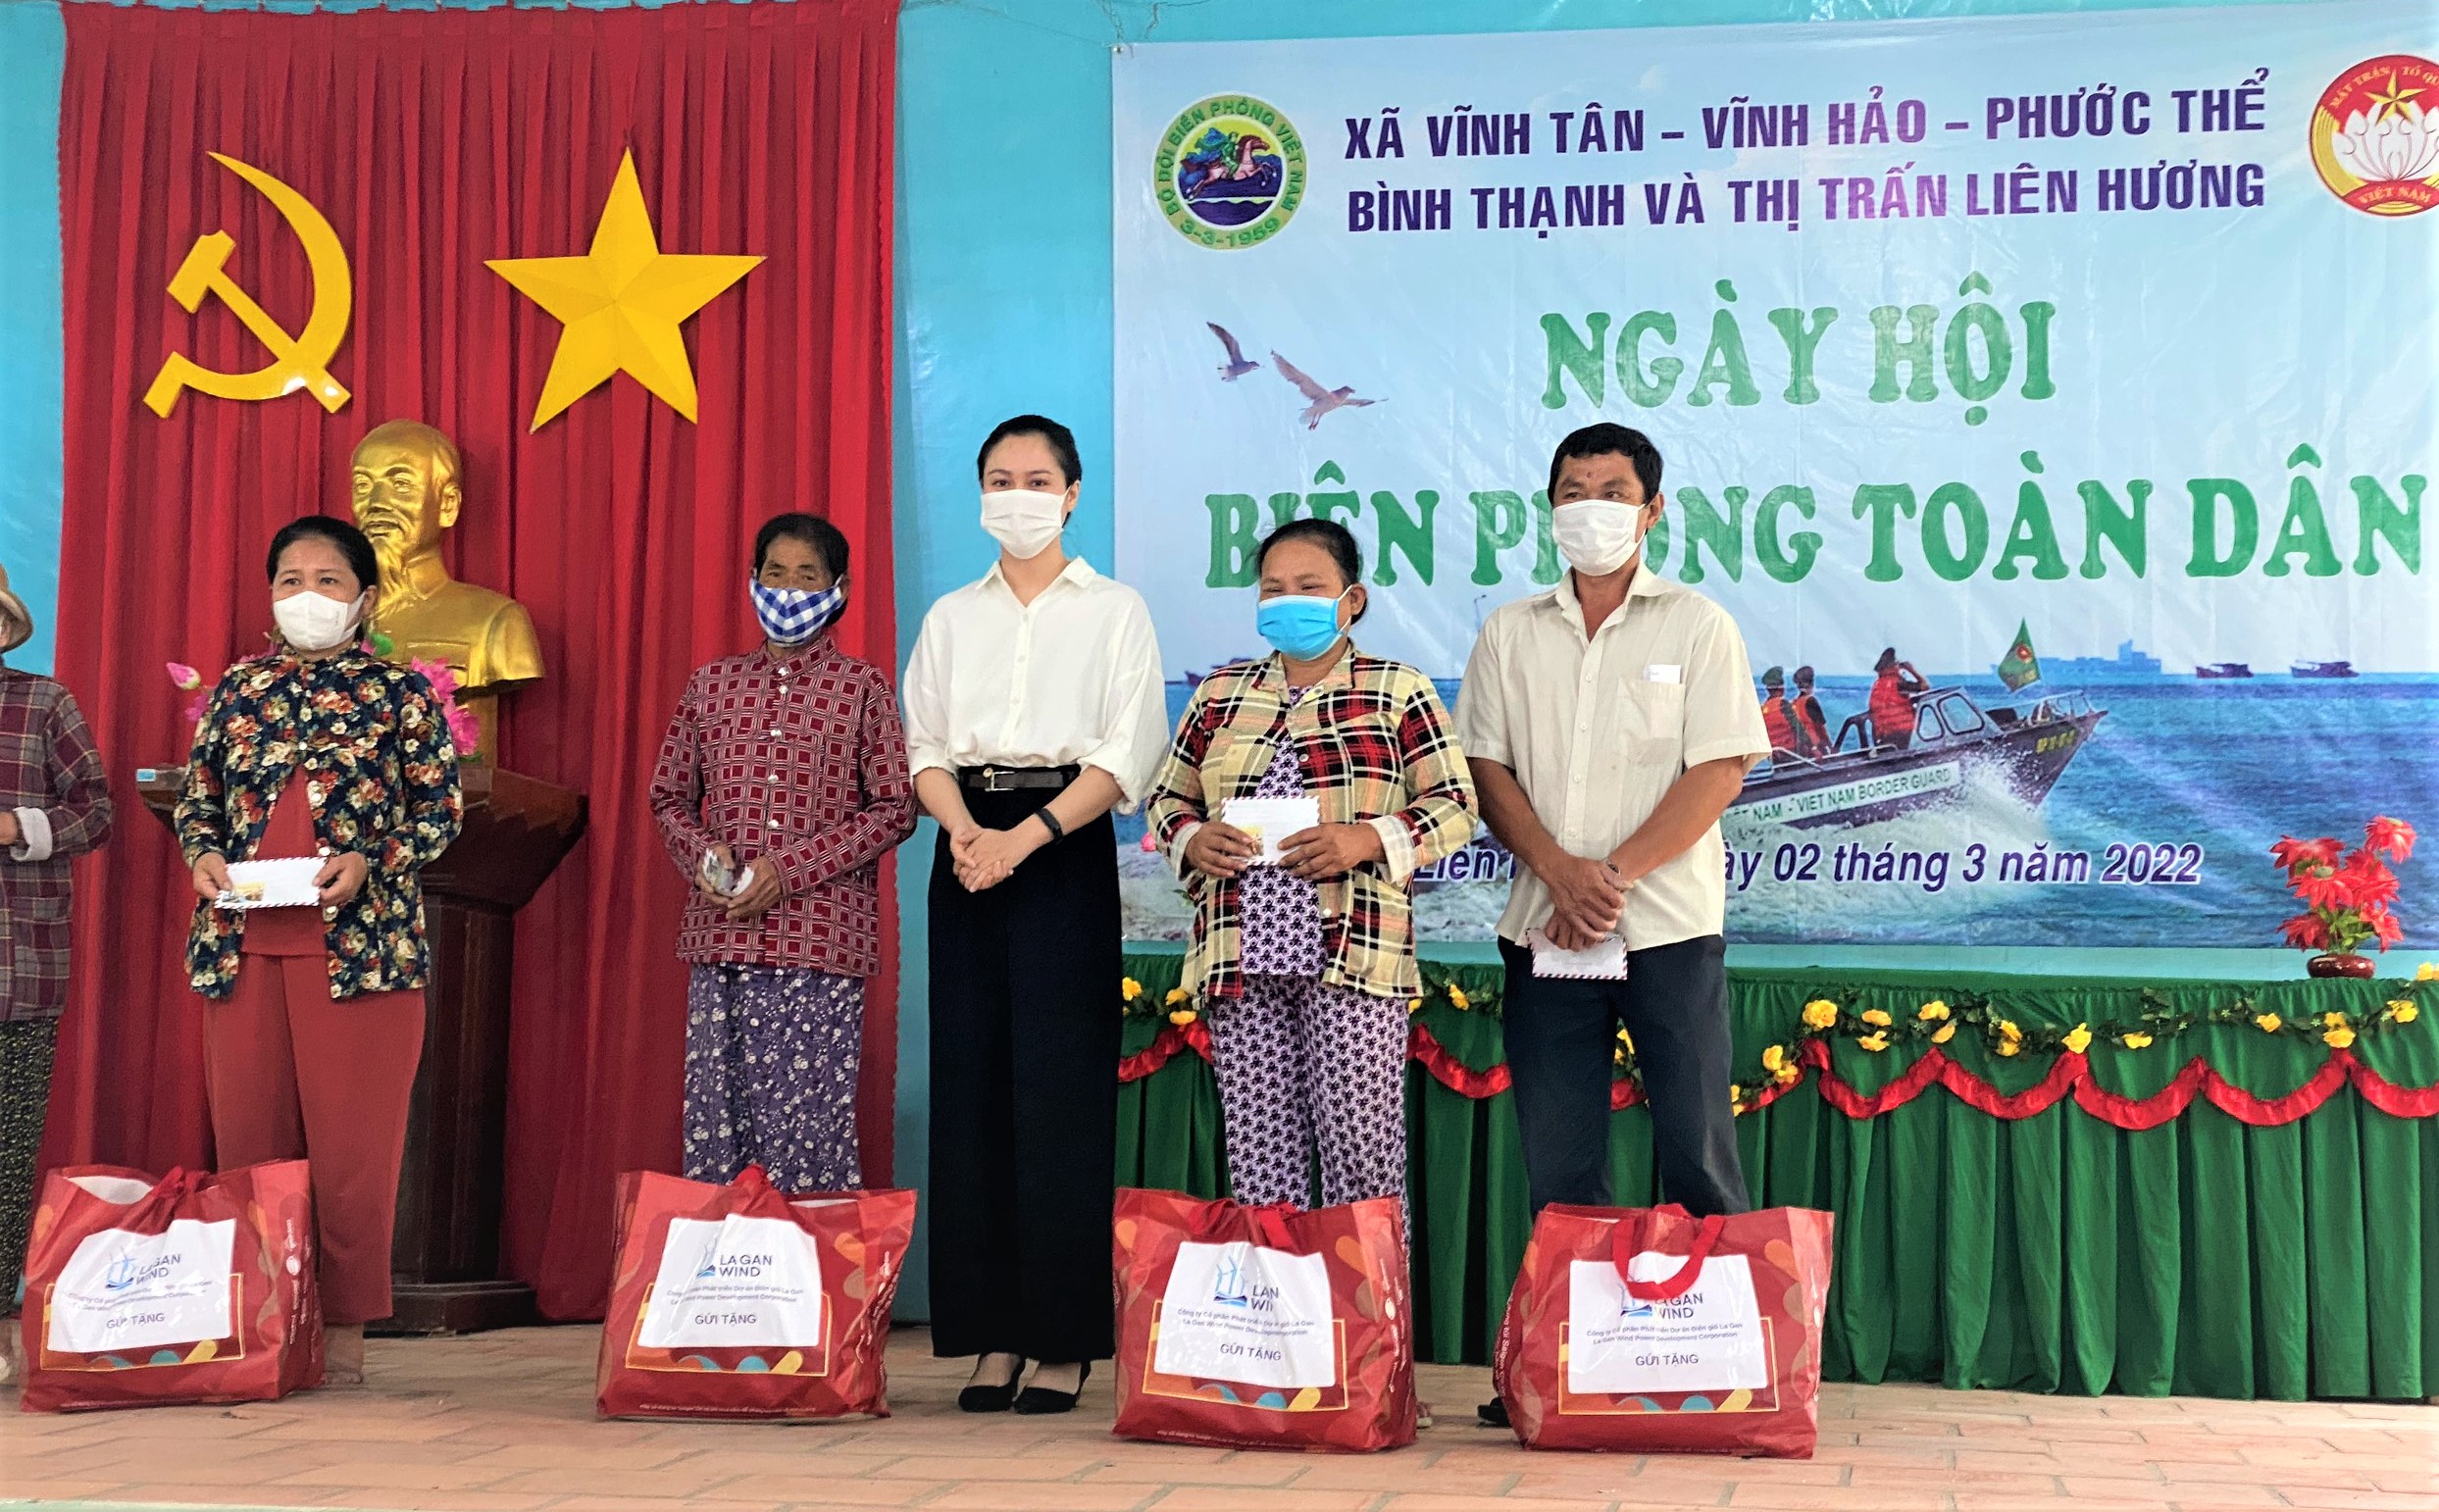 Dự án La Gàn đã gửi các phần quà đến 50 gia đình ngư dân có hoàn cảnh khó khăn tại địa phương trong Ngày Biên phòng Toàn dân ở huyện Tuy Phong.